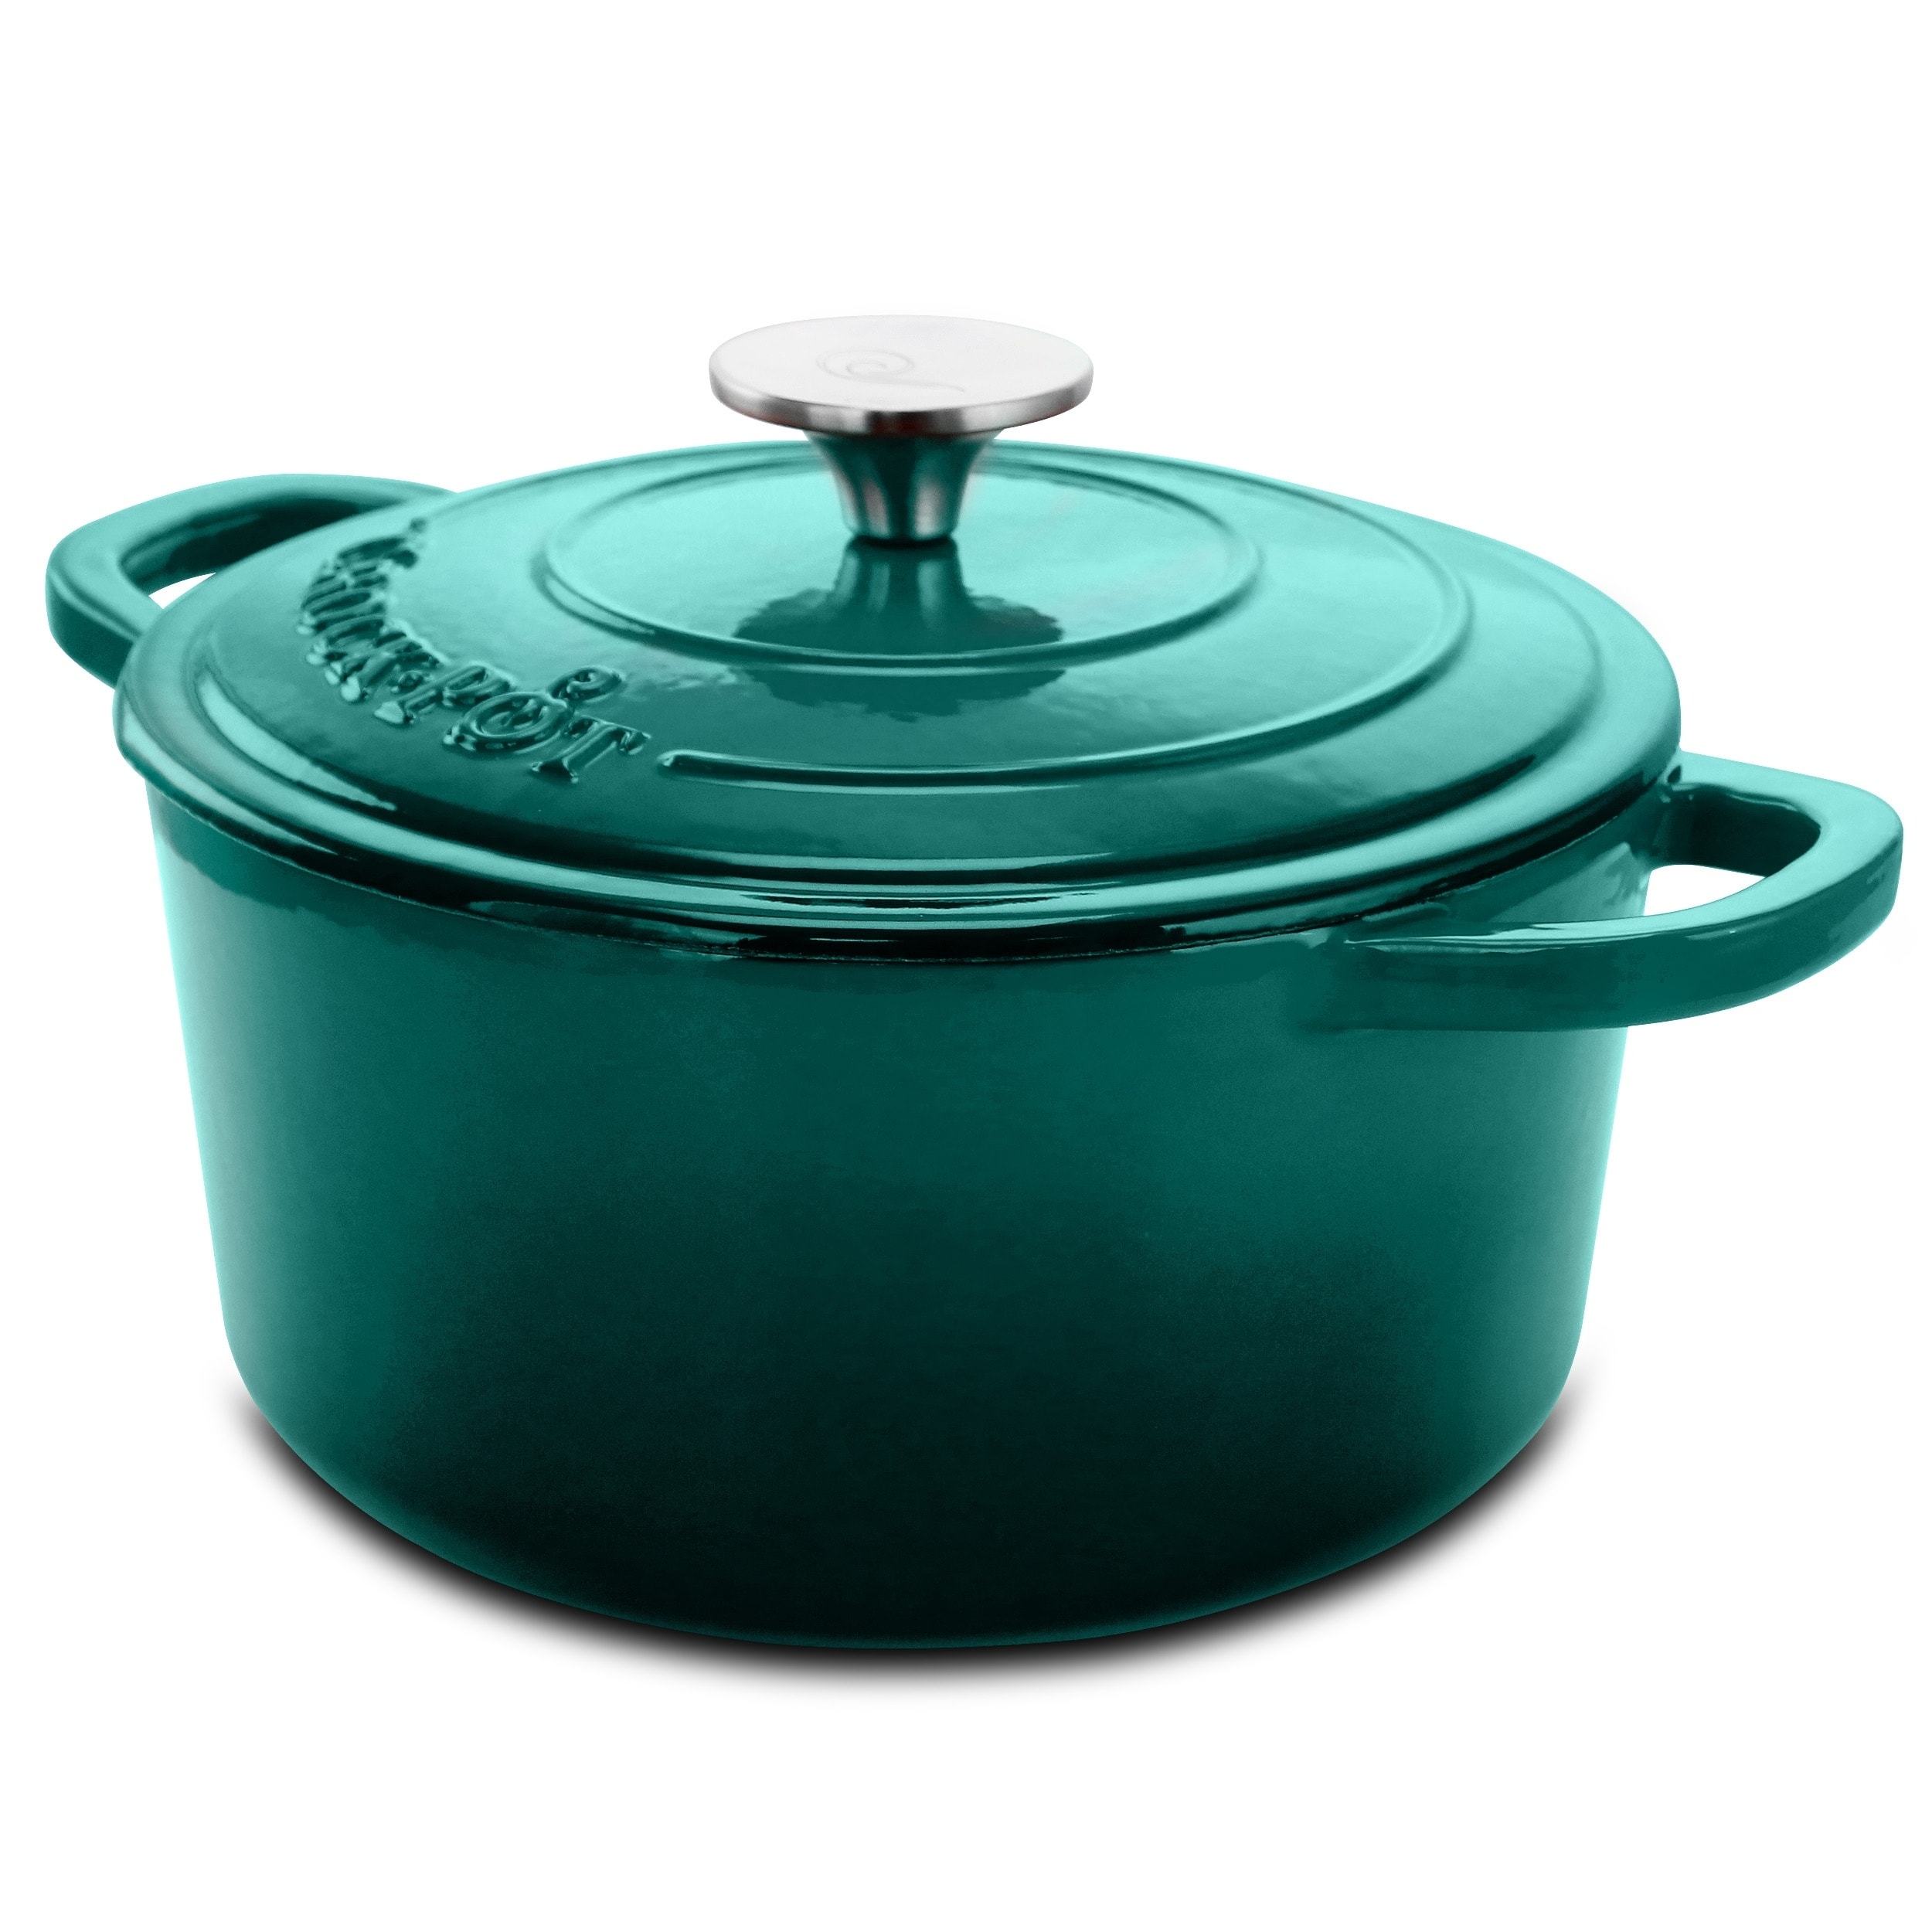  Crock Pot Artisan 13 Inch Preseasoned Cast Iron Rectangular  Lasagna Pan: Home & Kitchen